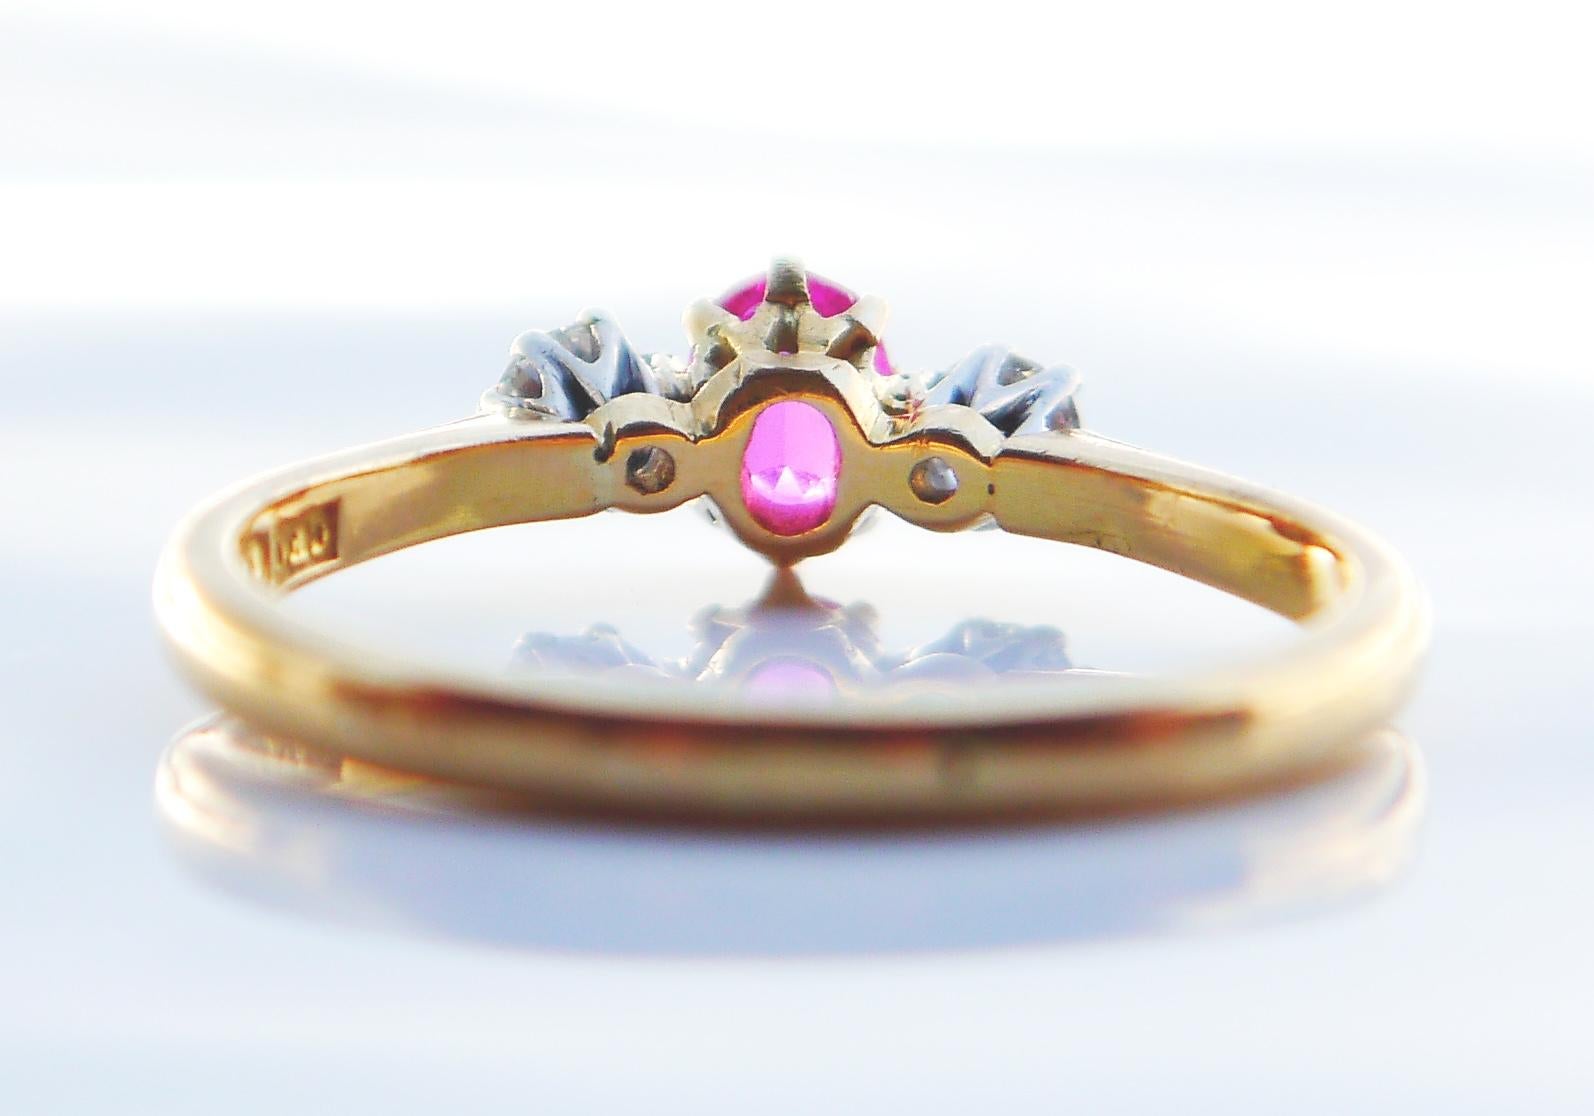 Eleganter Ring aus massivem 18-karätigem Gelbgold mit Platinclustern, der einen natürlichen rosaroten Rubin im Ovalschliff und 2 Diamanten im Brillantschliff trägt.

Sonderanfertigung in Schweden, Stockholm, gestempelt 18K. Punzierungen des